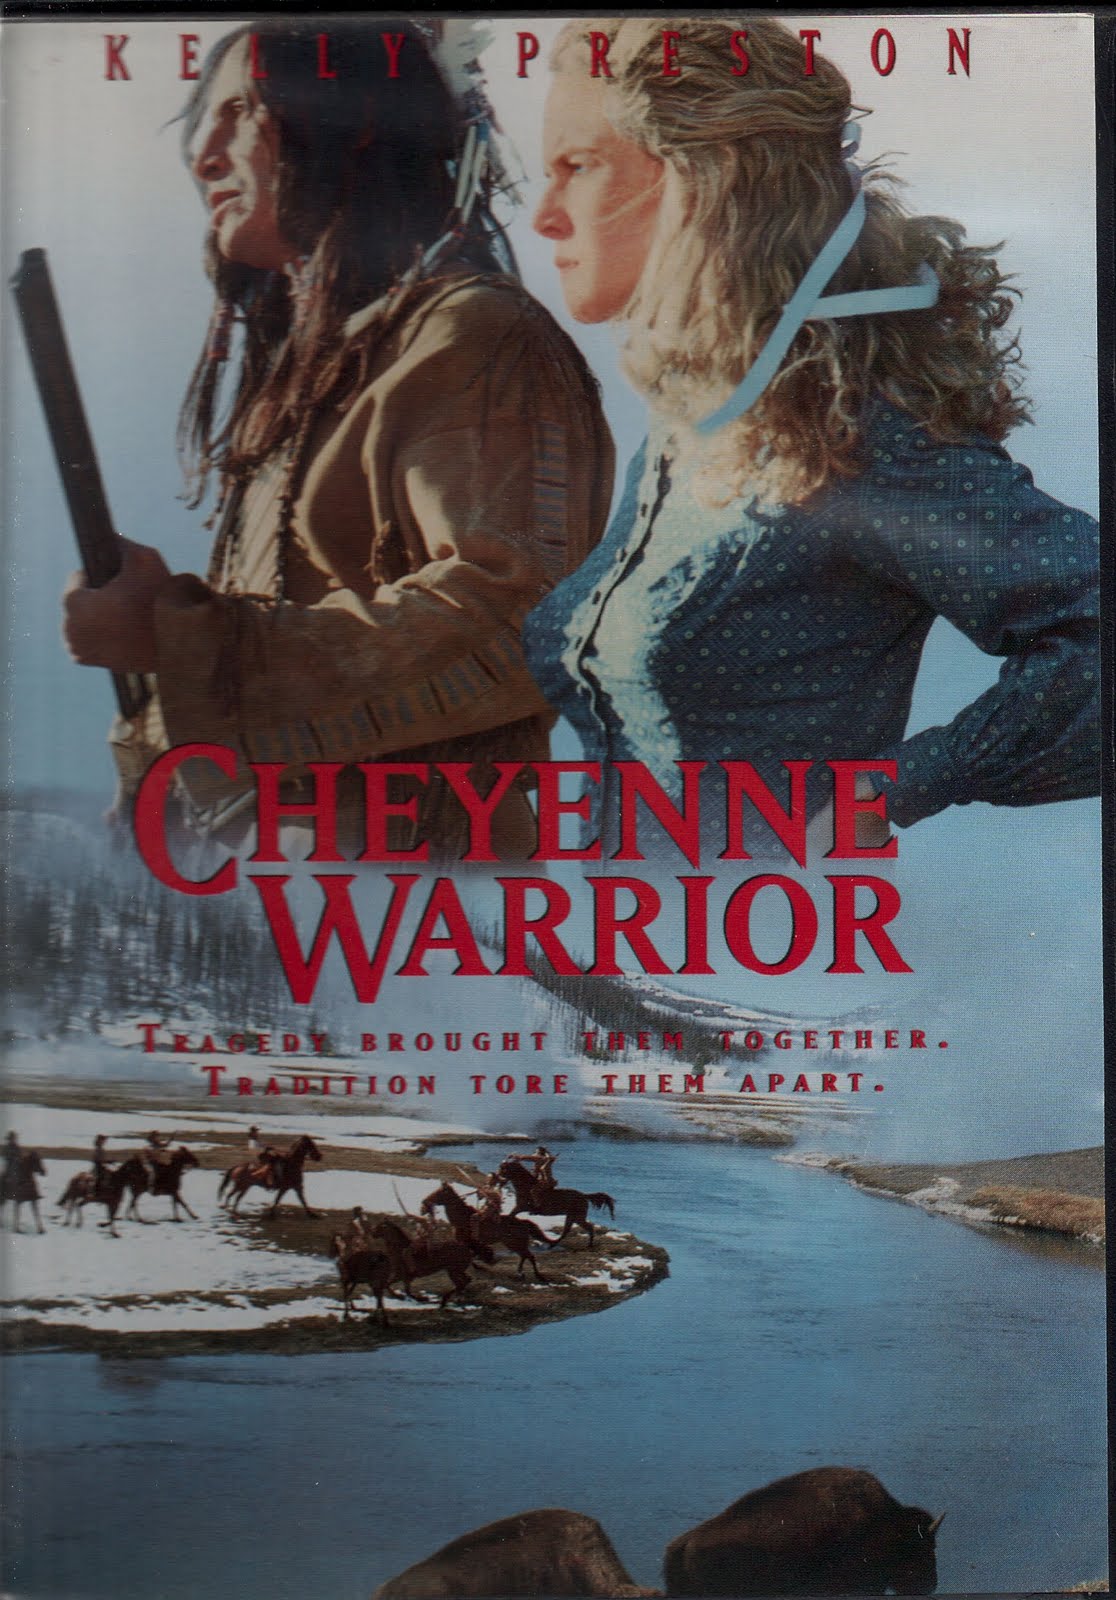 Cheyenne Warrior movie